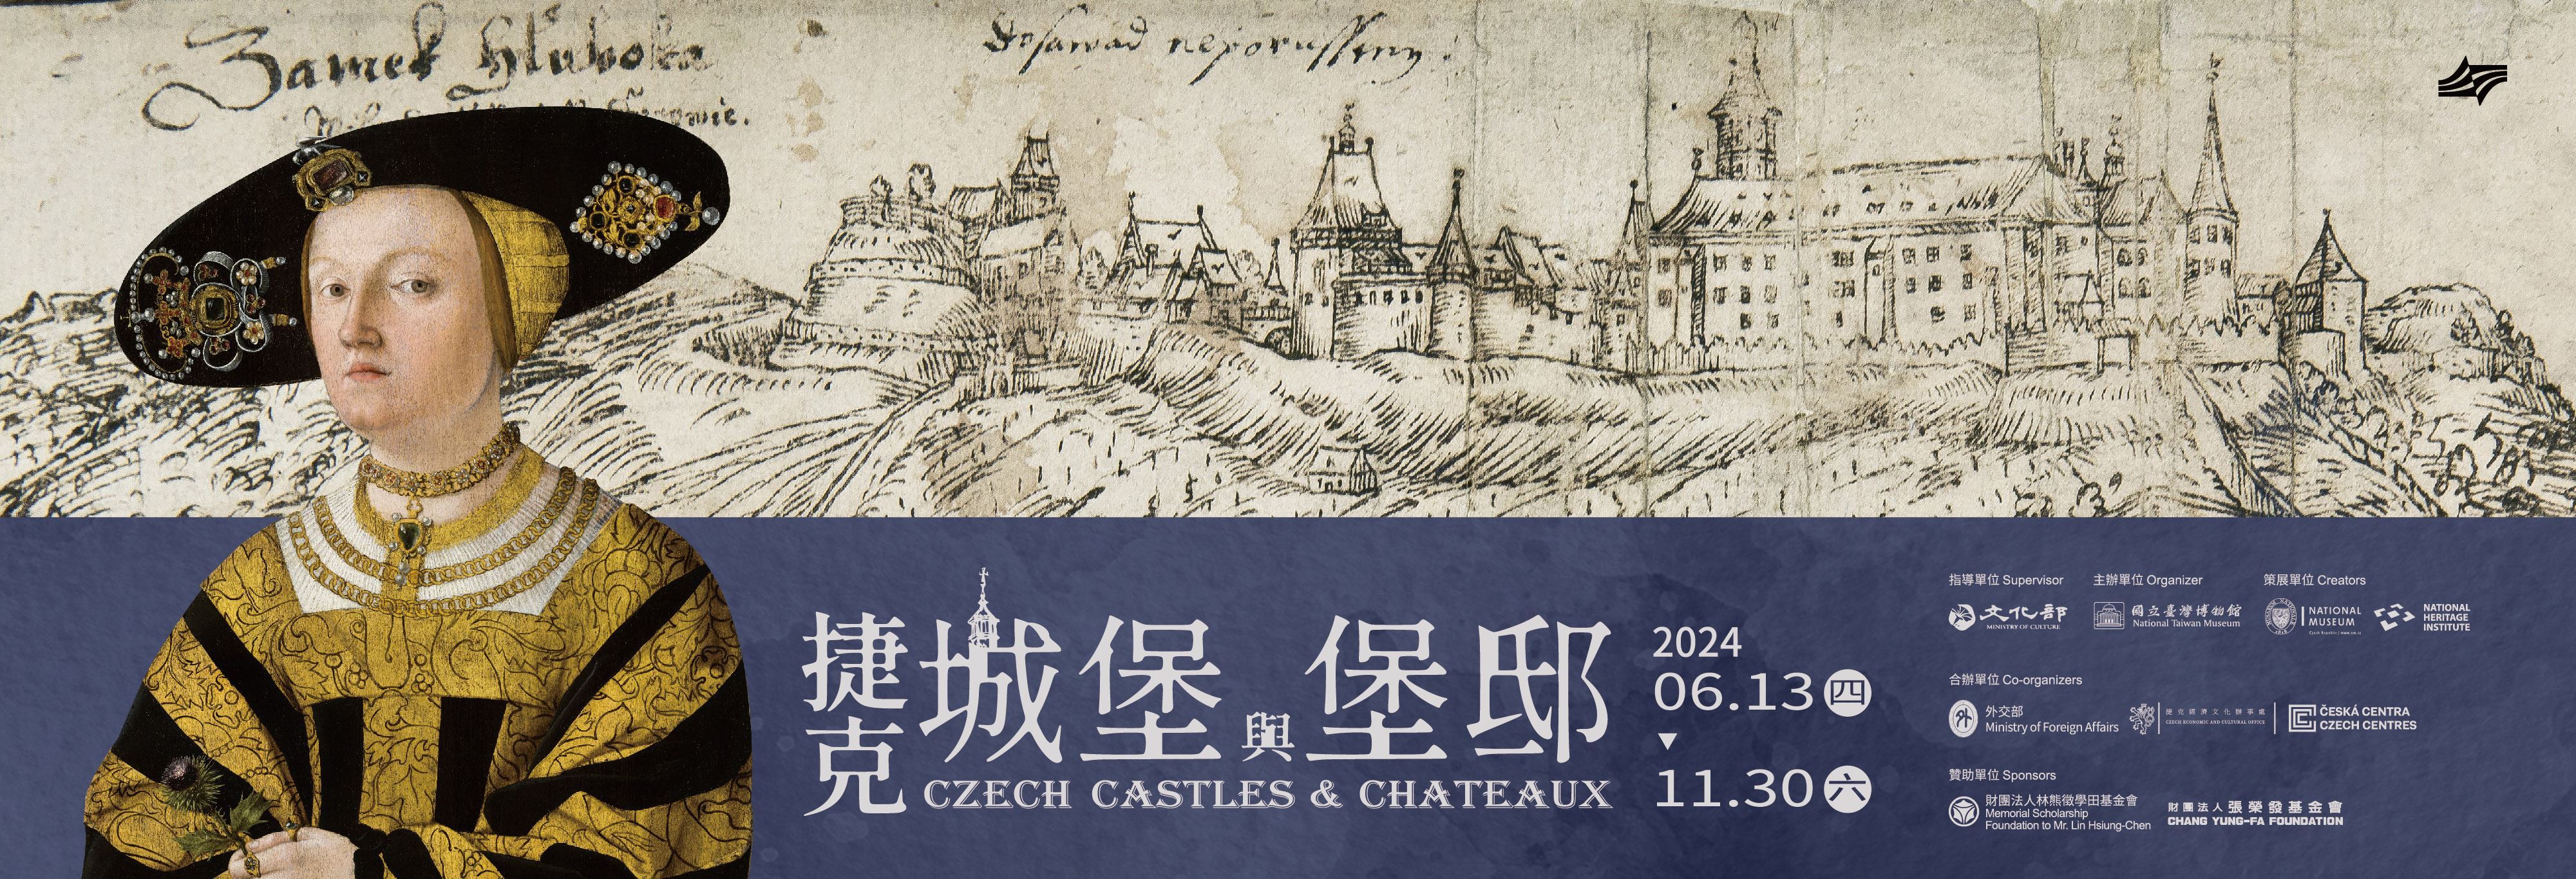 Exposition sur les châteaux tchèques au musée national de Taïwan